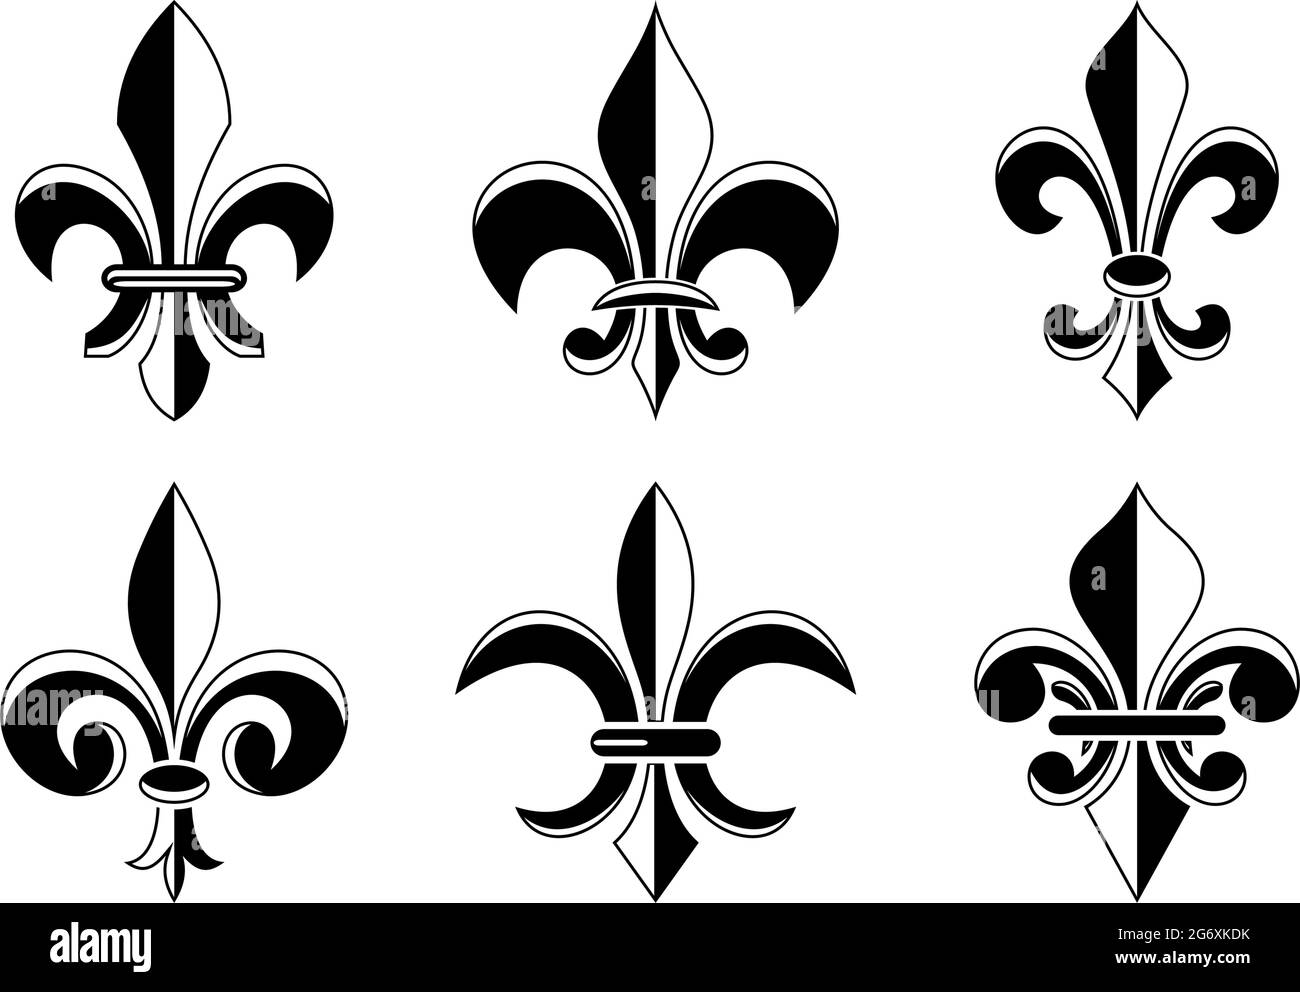 Símbolo de Fleur-de-lis en diferentes variaciones sobre un fondo blanco aislado. Ilustración del Vector